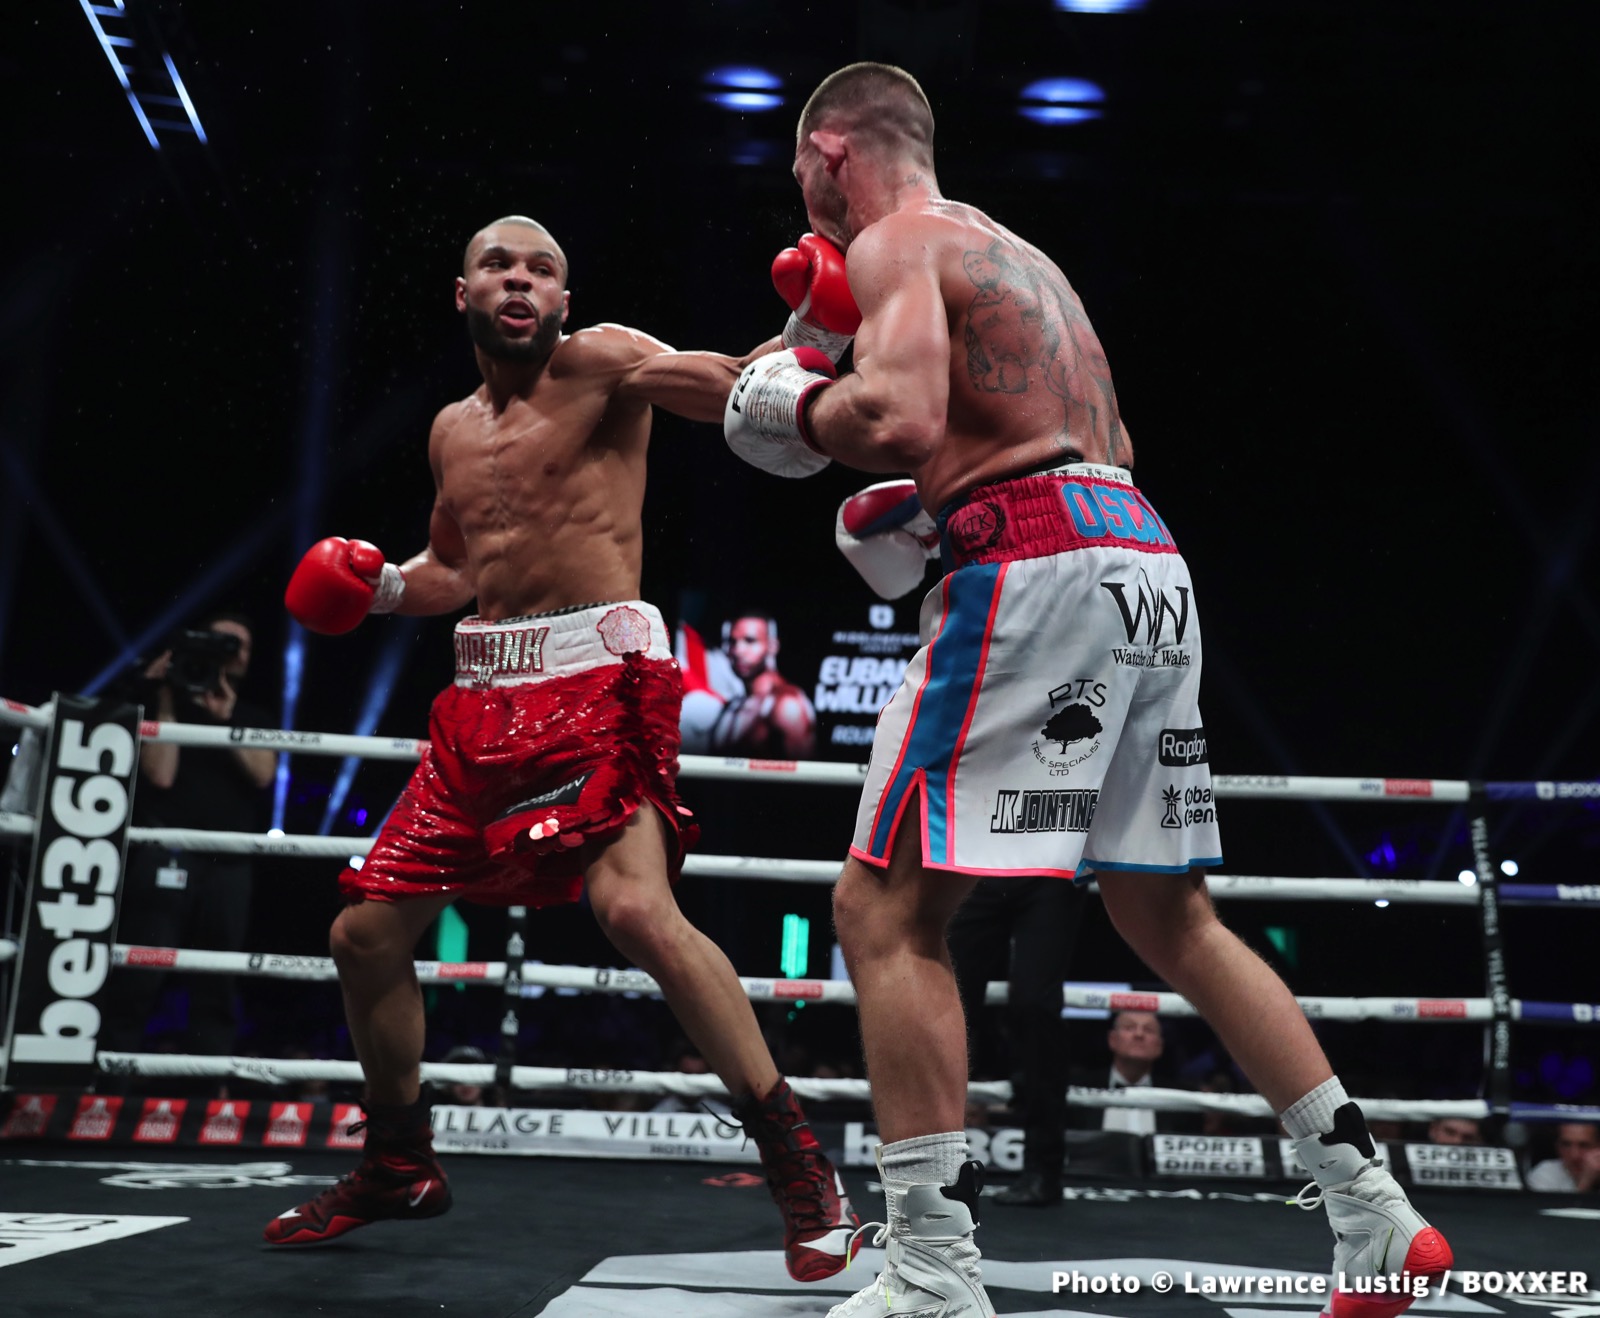 Foto e imagen de noticias de boxeo de Chris Eubank Jr, Gennady Golovkin